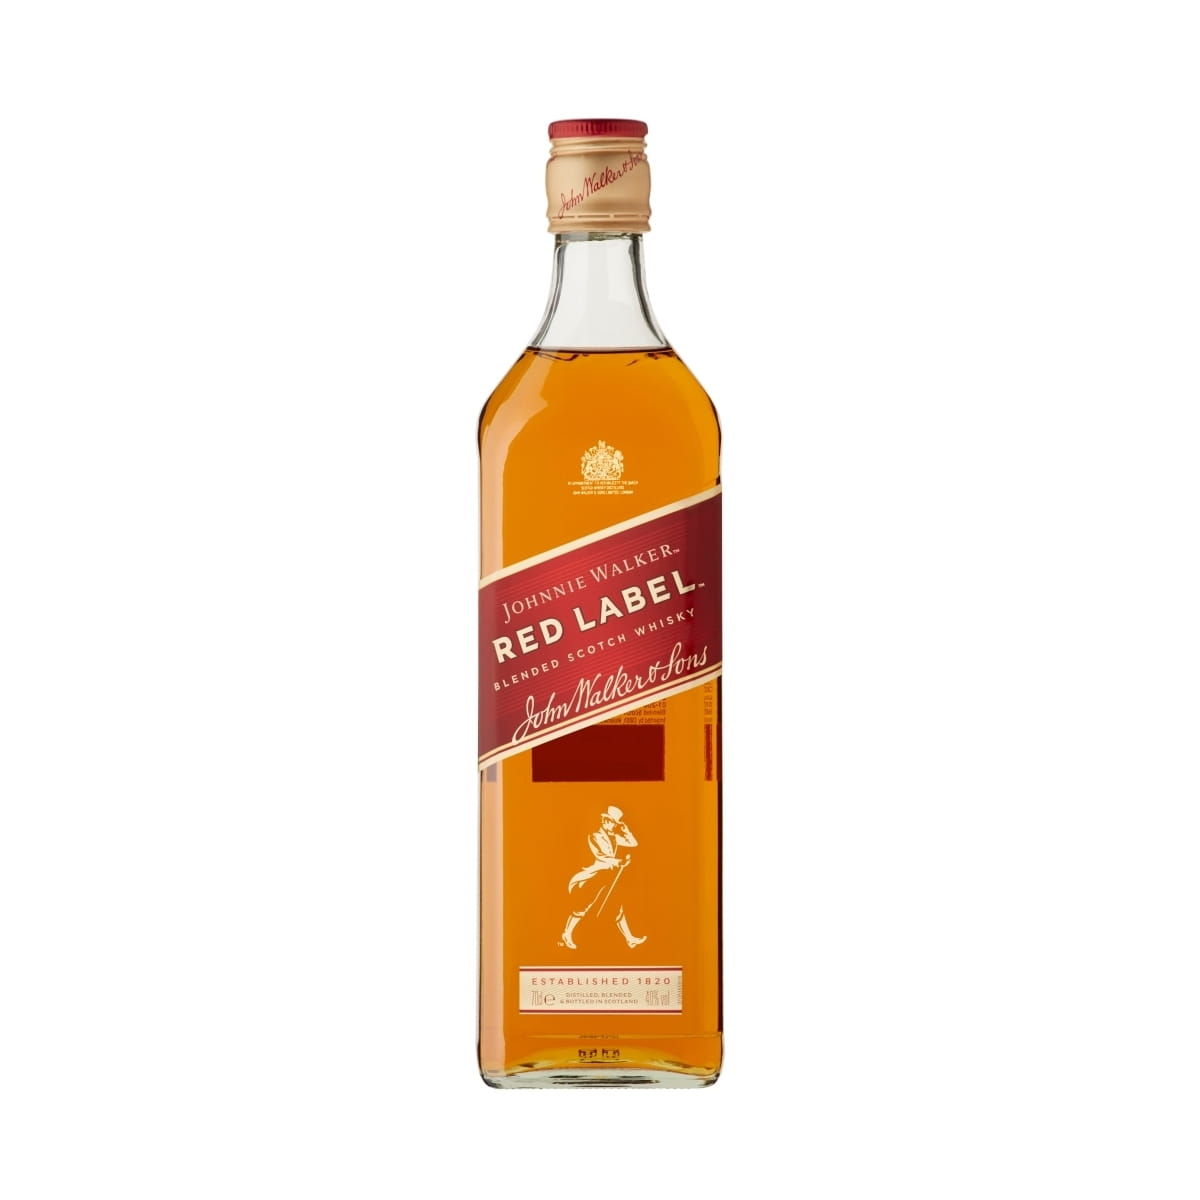 Whisky Johnnie Walker Red Label 0,7l